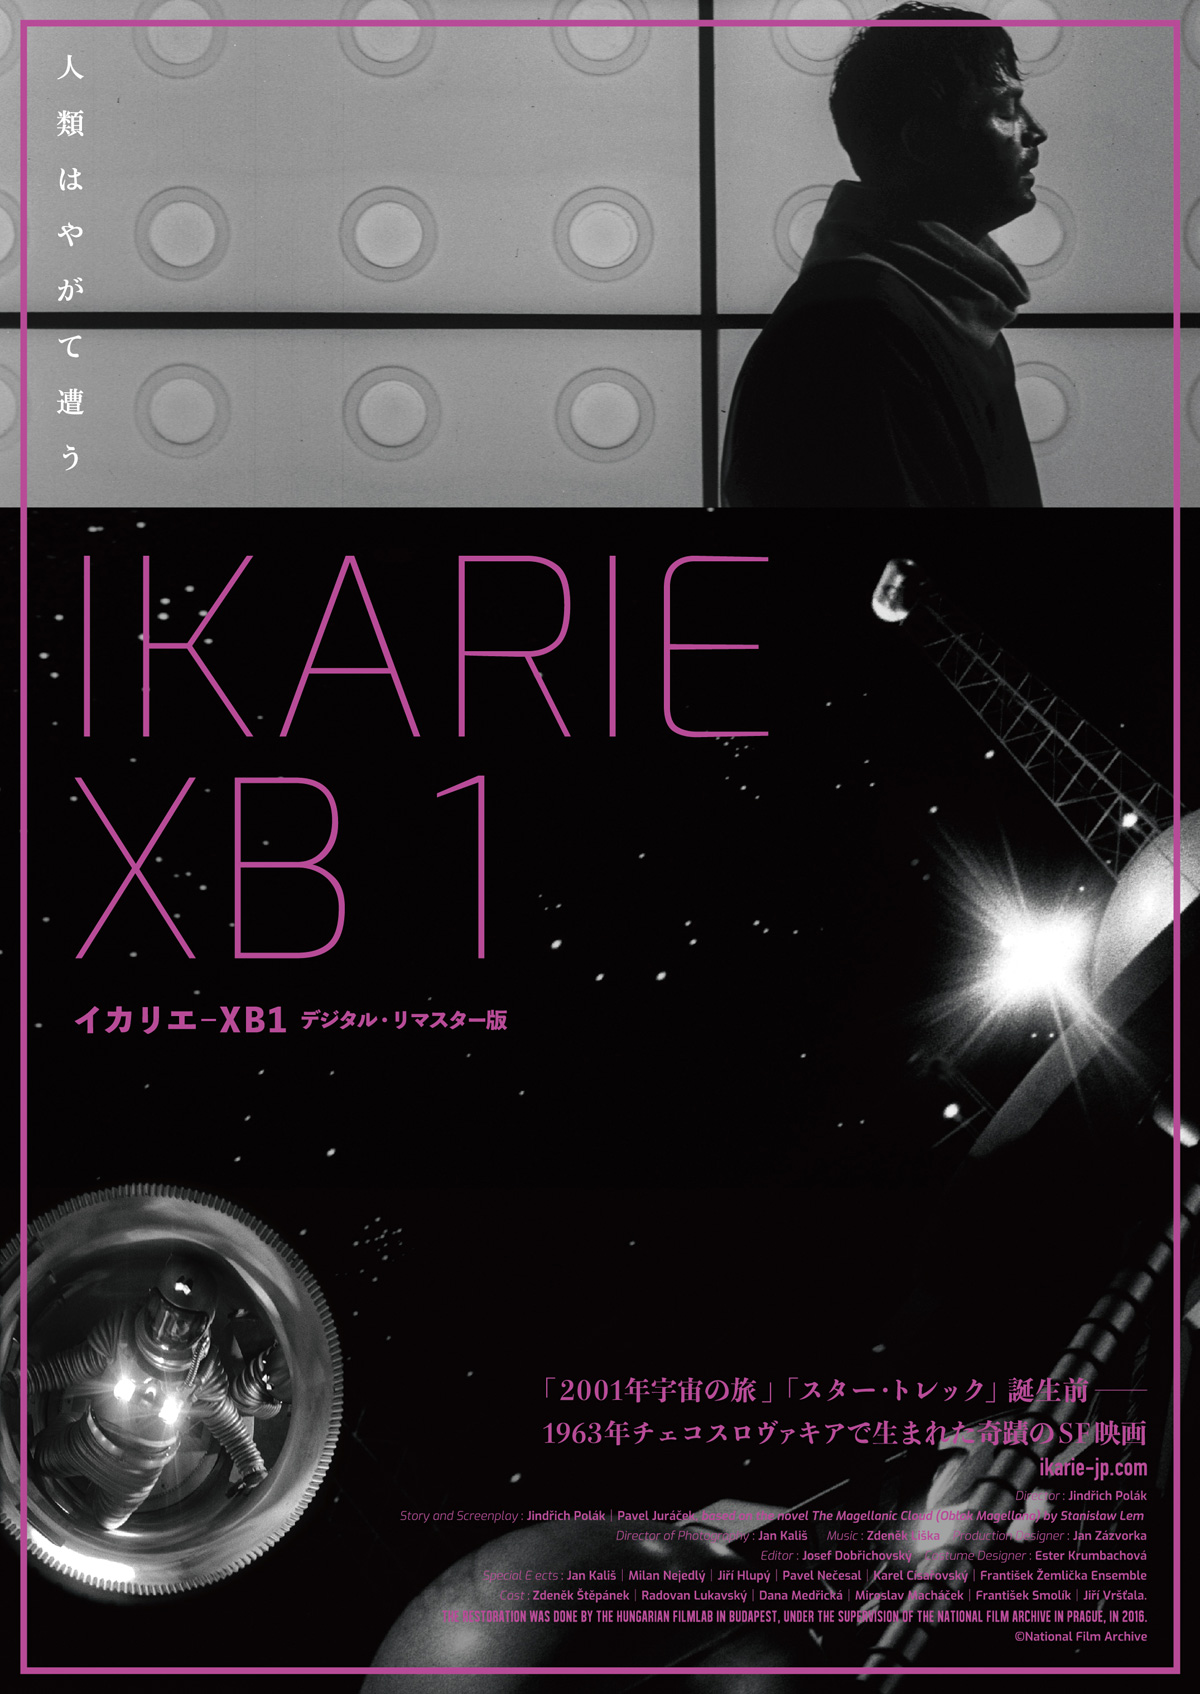 イカリエ-XB1の画像